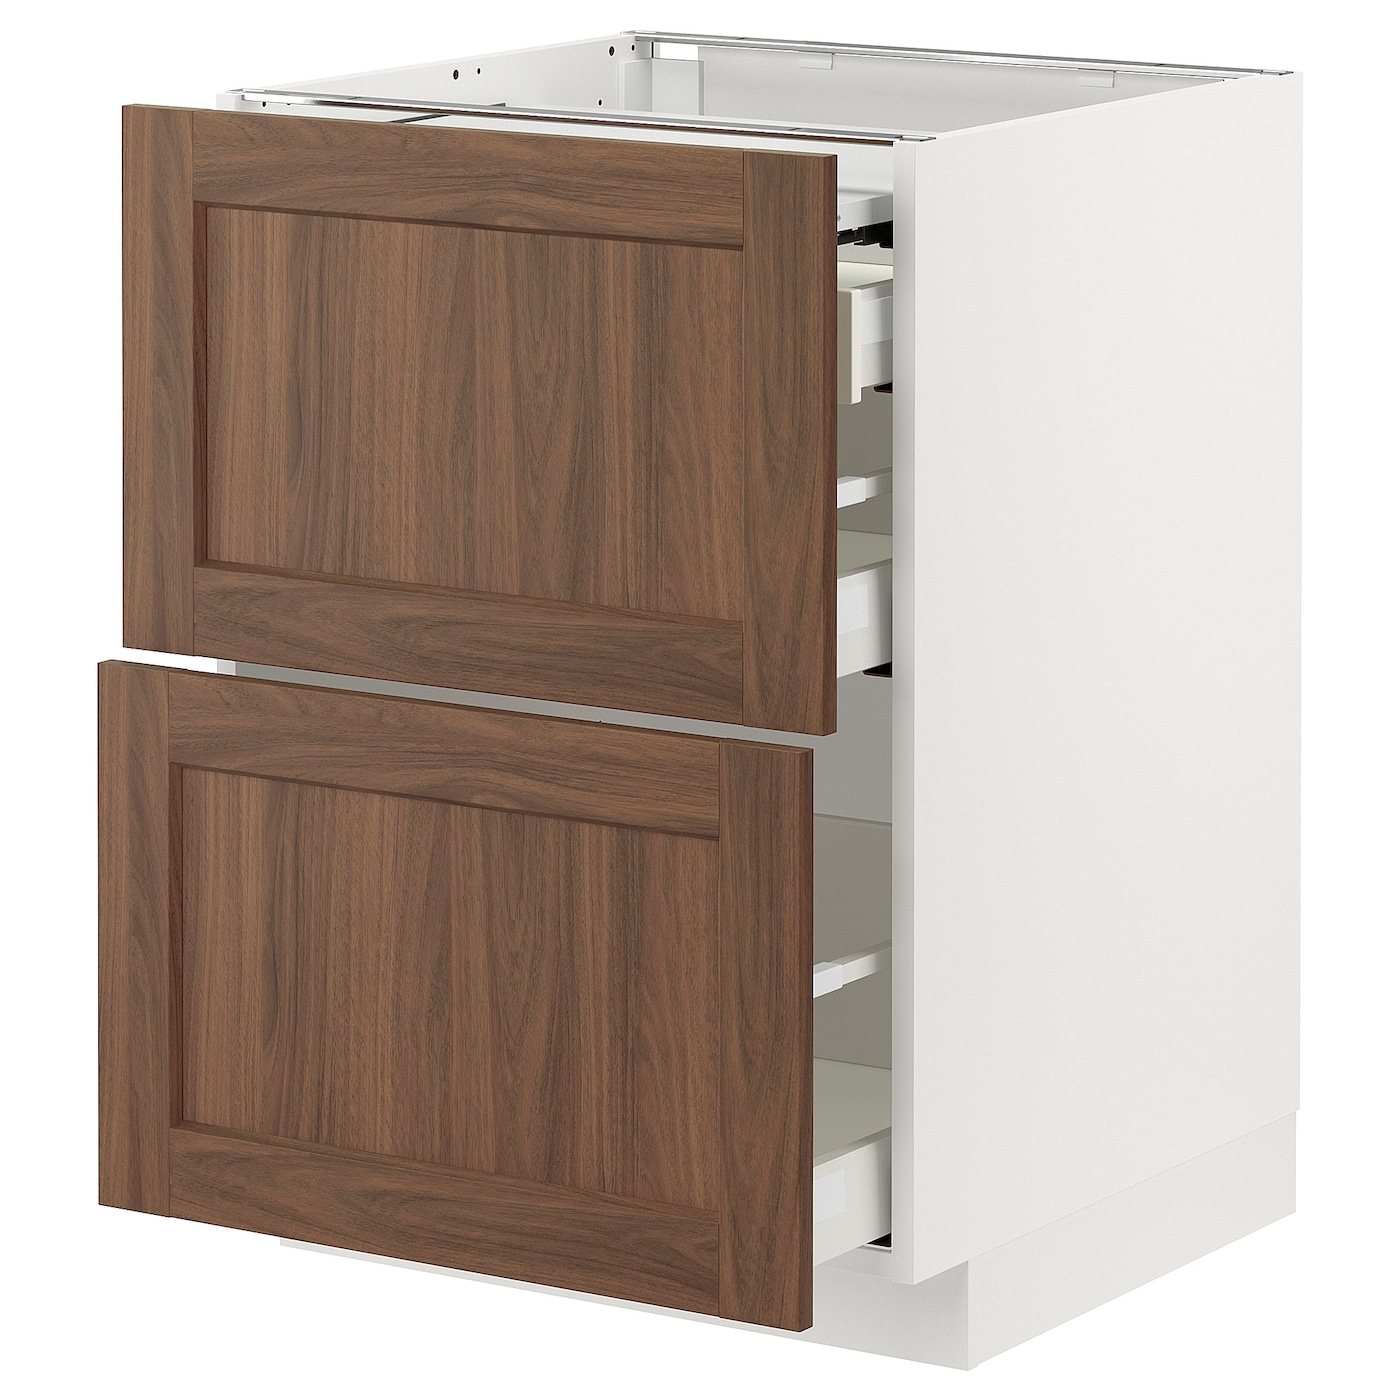 Напольный кухонный шкаф  - IKEA METOD MAXIMERA, 88x62x60см, белый/коричневый, МЕТОД МАКСИМЕРА ИКЕА